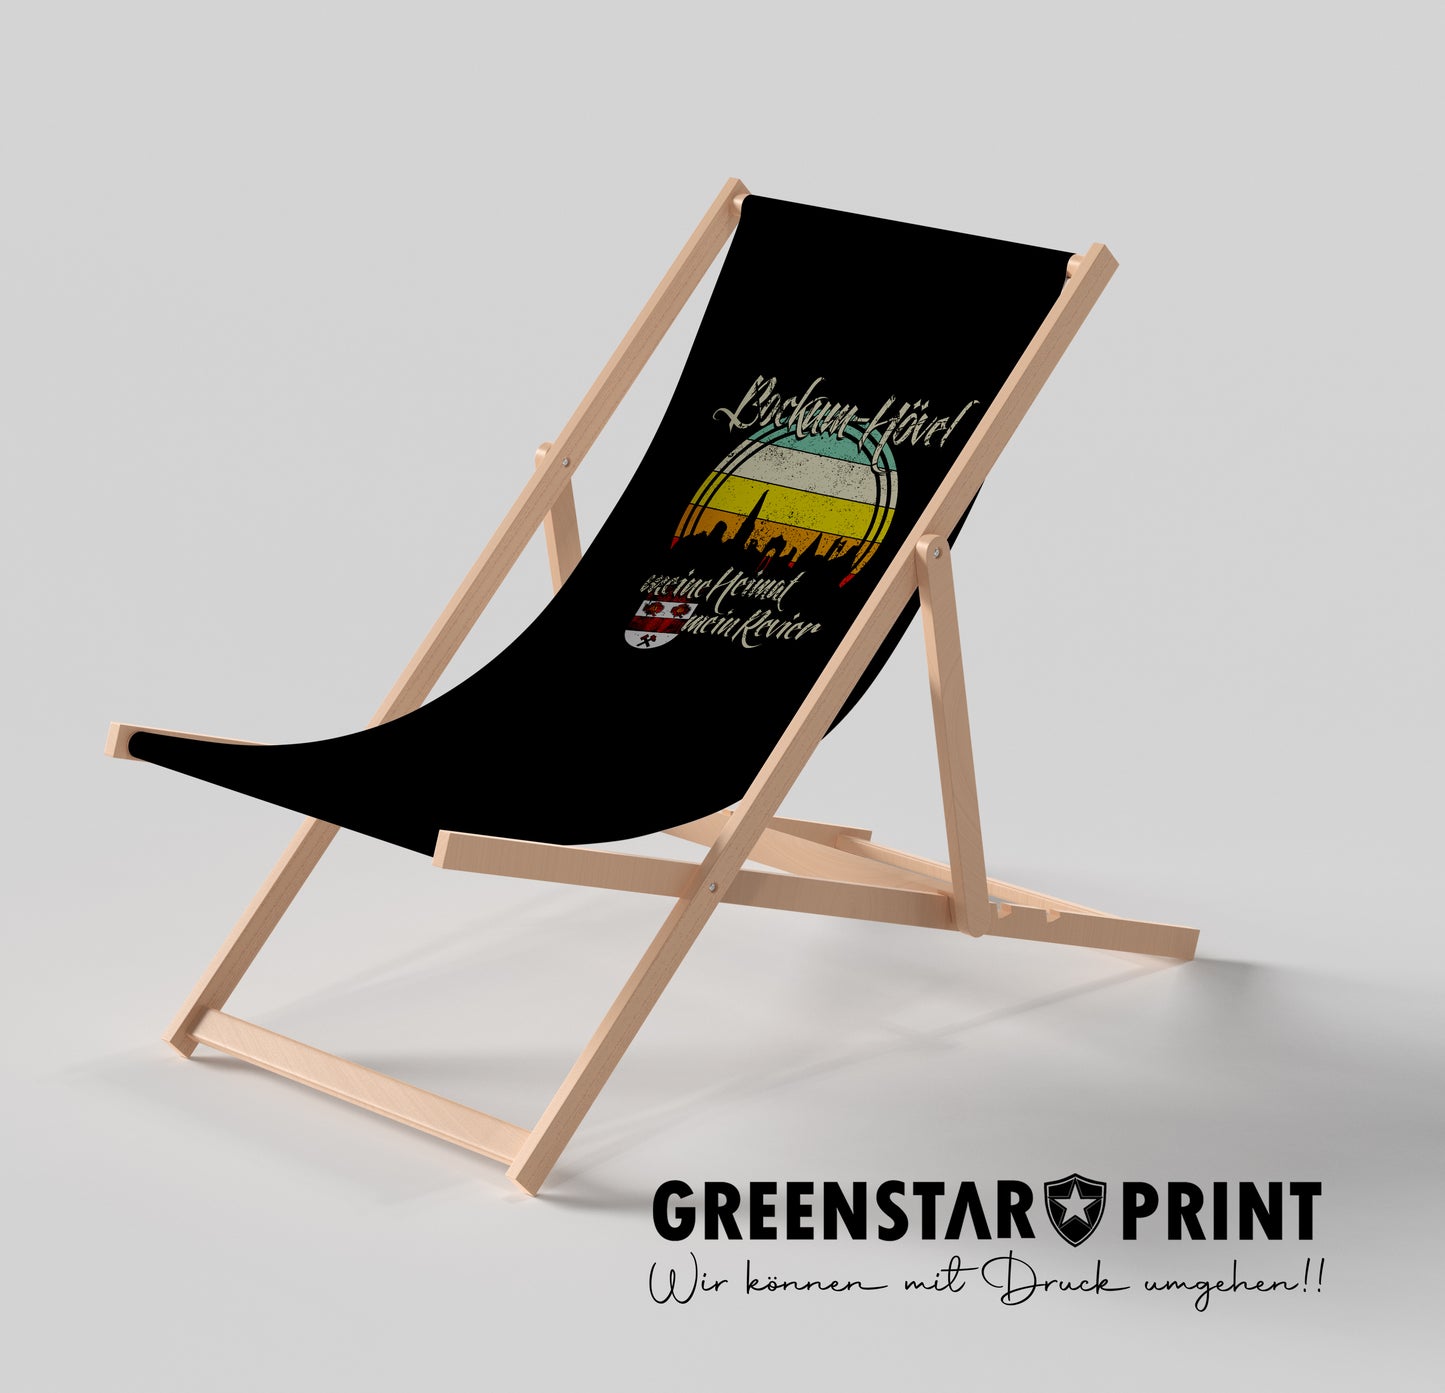 Liegestuhl "Beach Chair" Bockum Hövel - Meine Heimat-Mein Revier